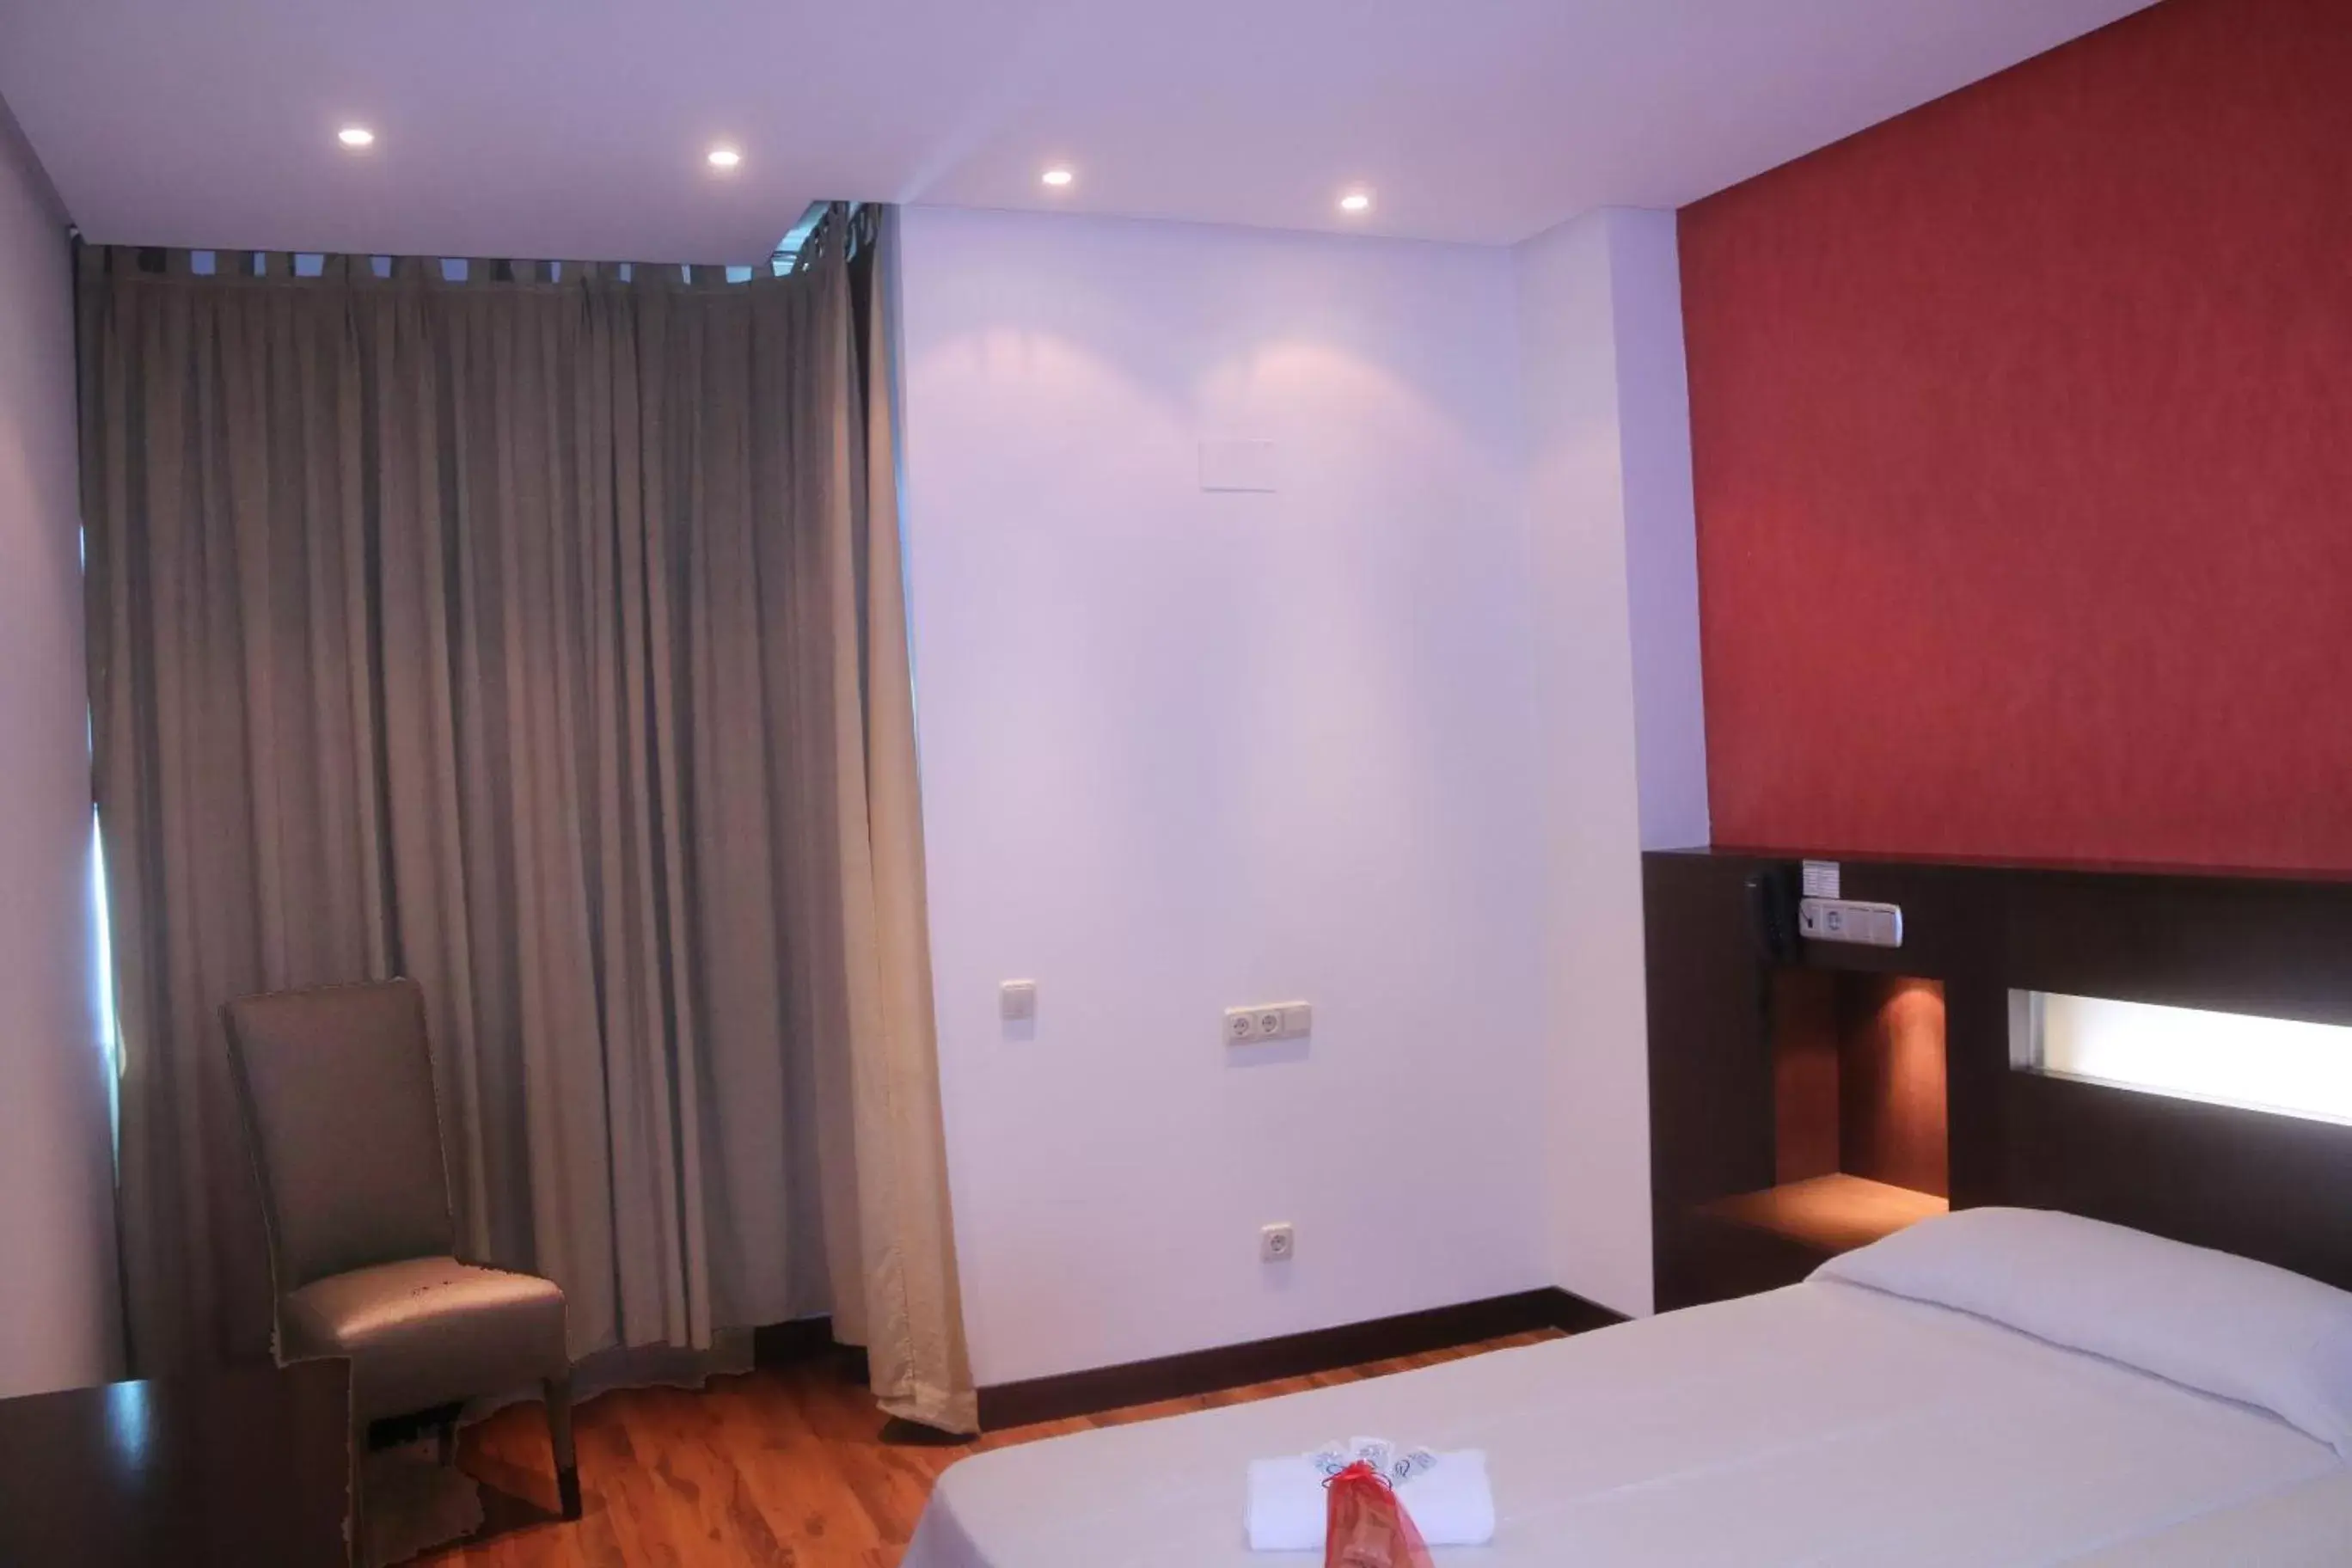 Bed, Room Photo in Hotel La Cantueña